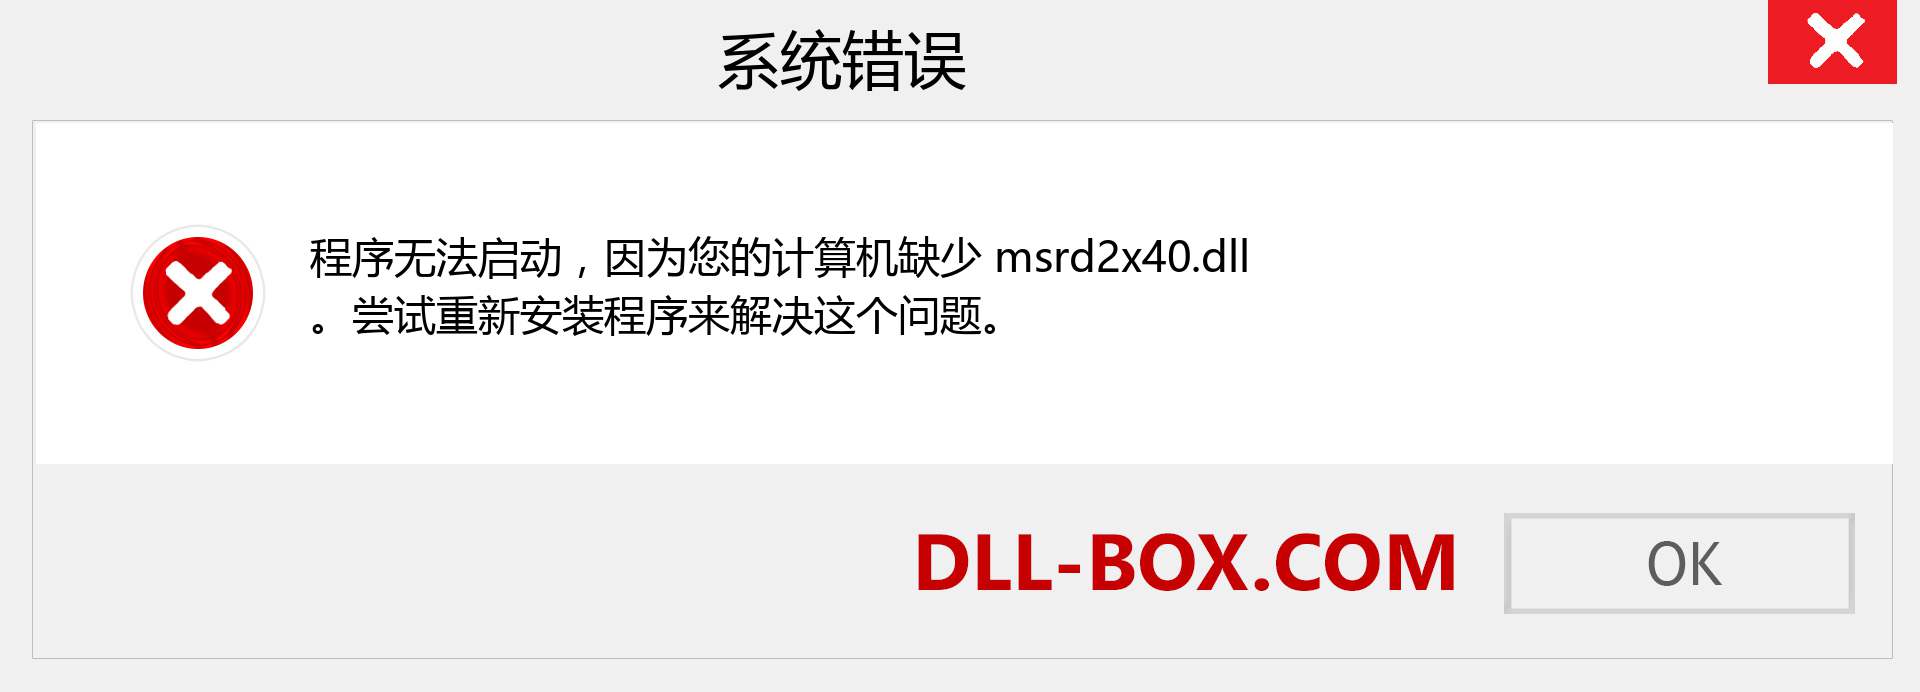 msrd2x40.dll 文件丢失？。 适用于 Windows 7、8、10 的下载 - 修复 Windows、照片、图像上的 msrd2x40 dll 丢失错误